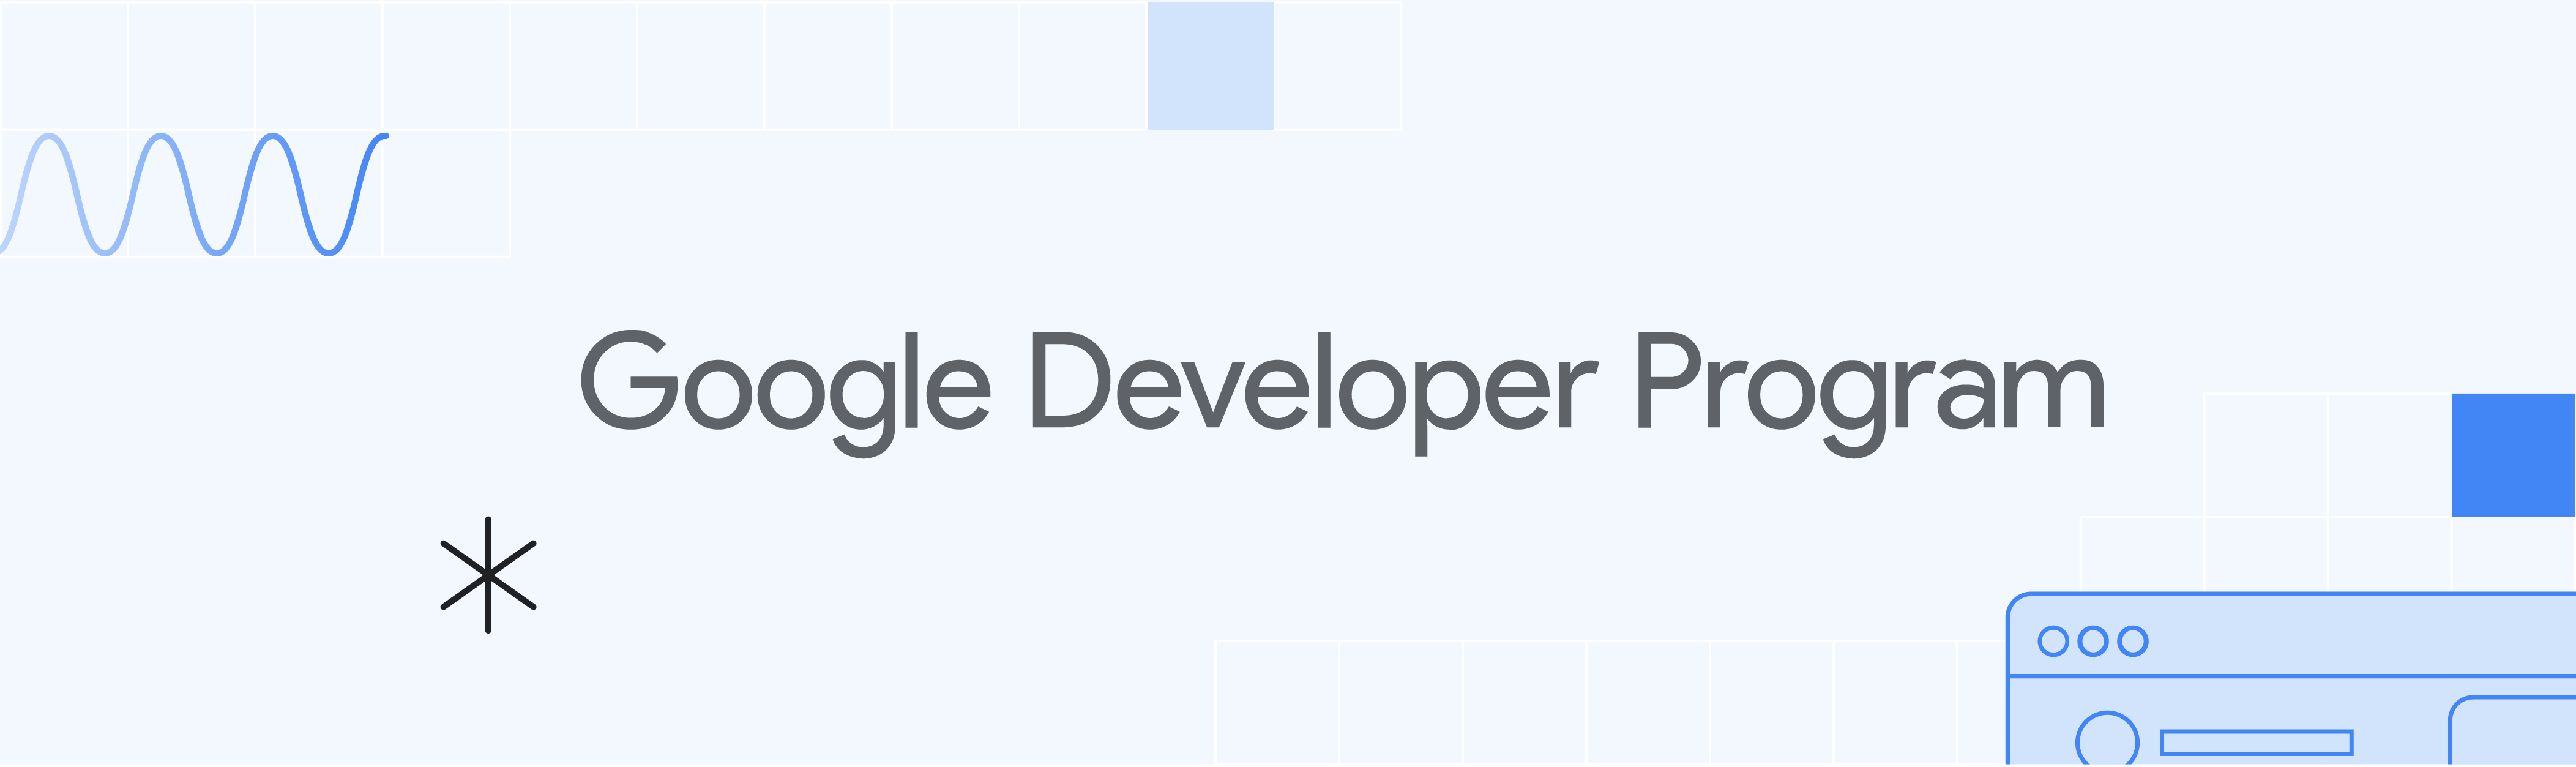 带有“Google 开发者计划”和插图的浅蓝色横幅。